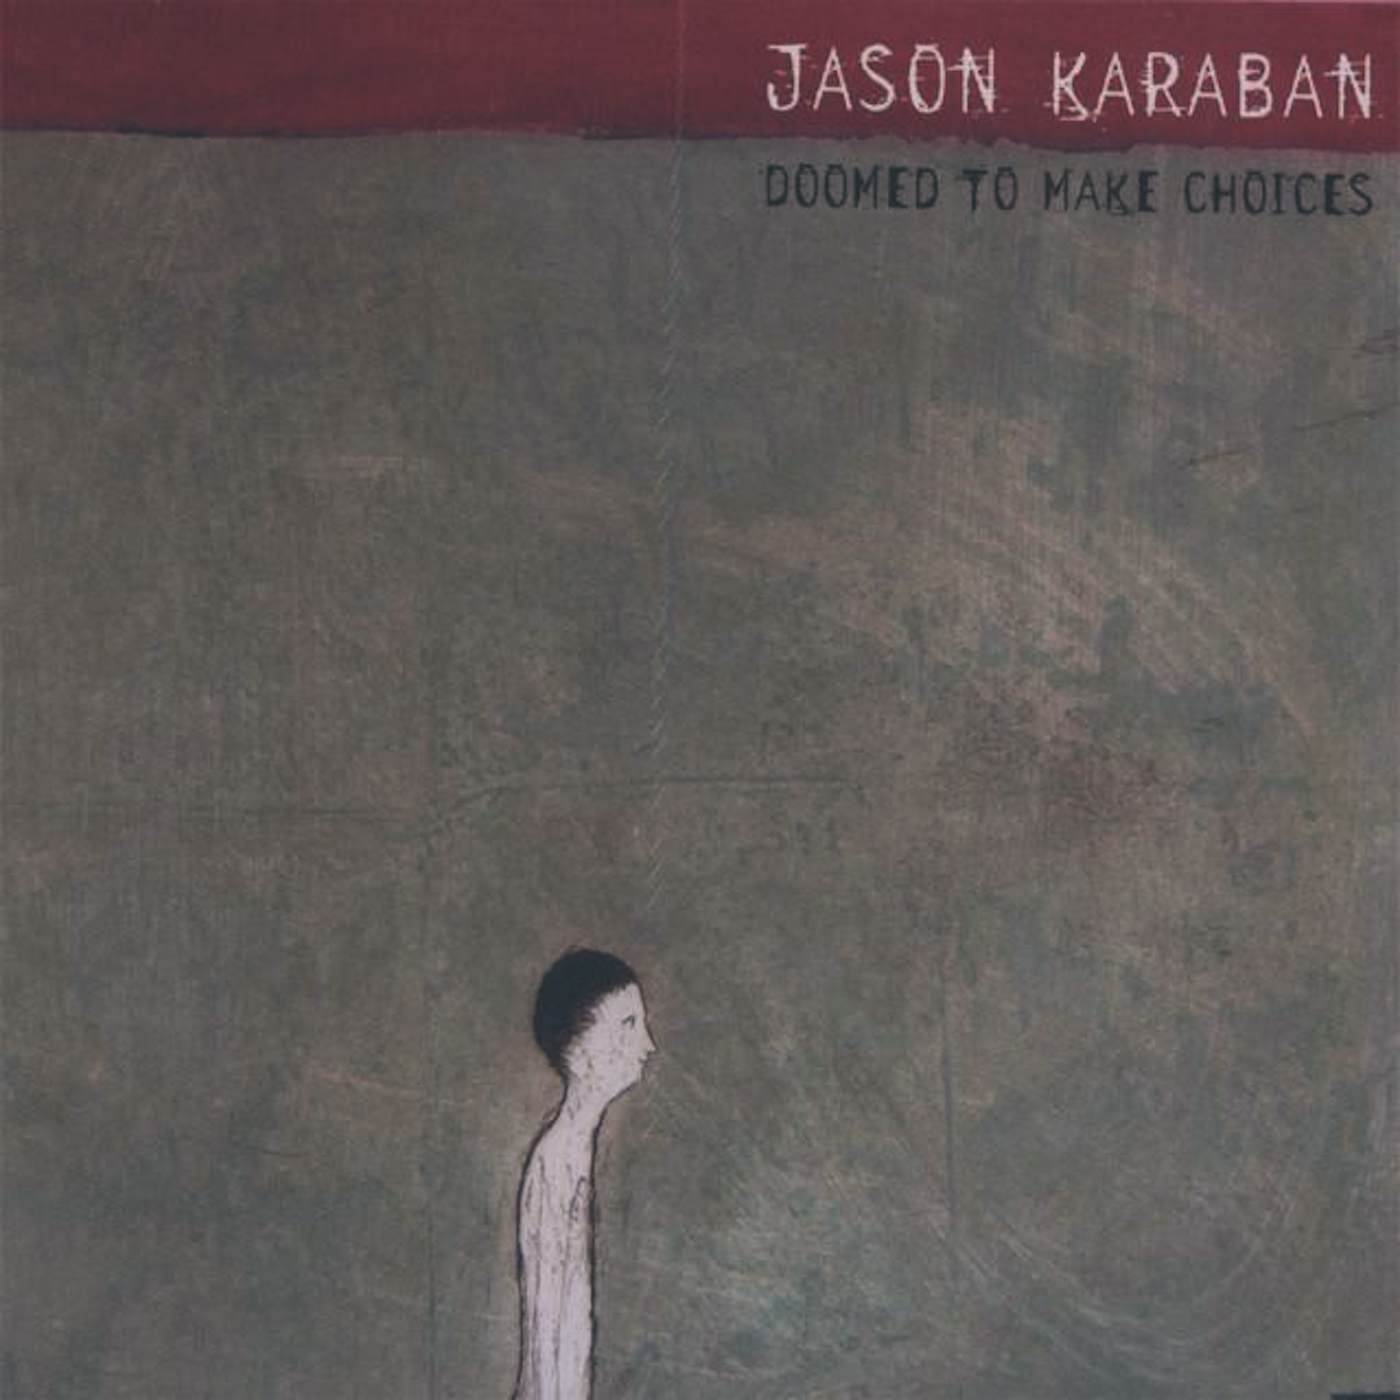 Jason Karaban